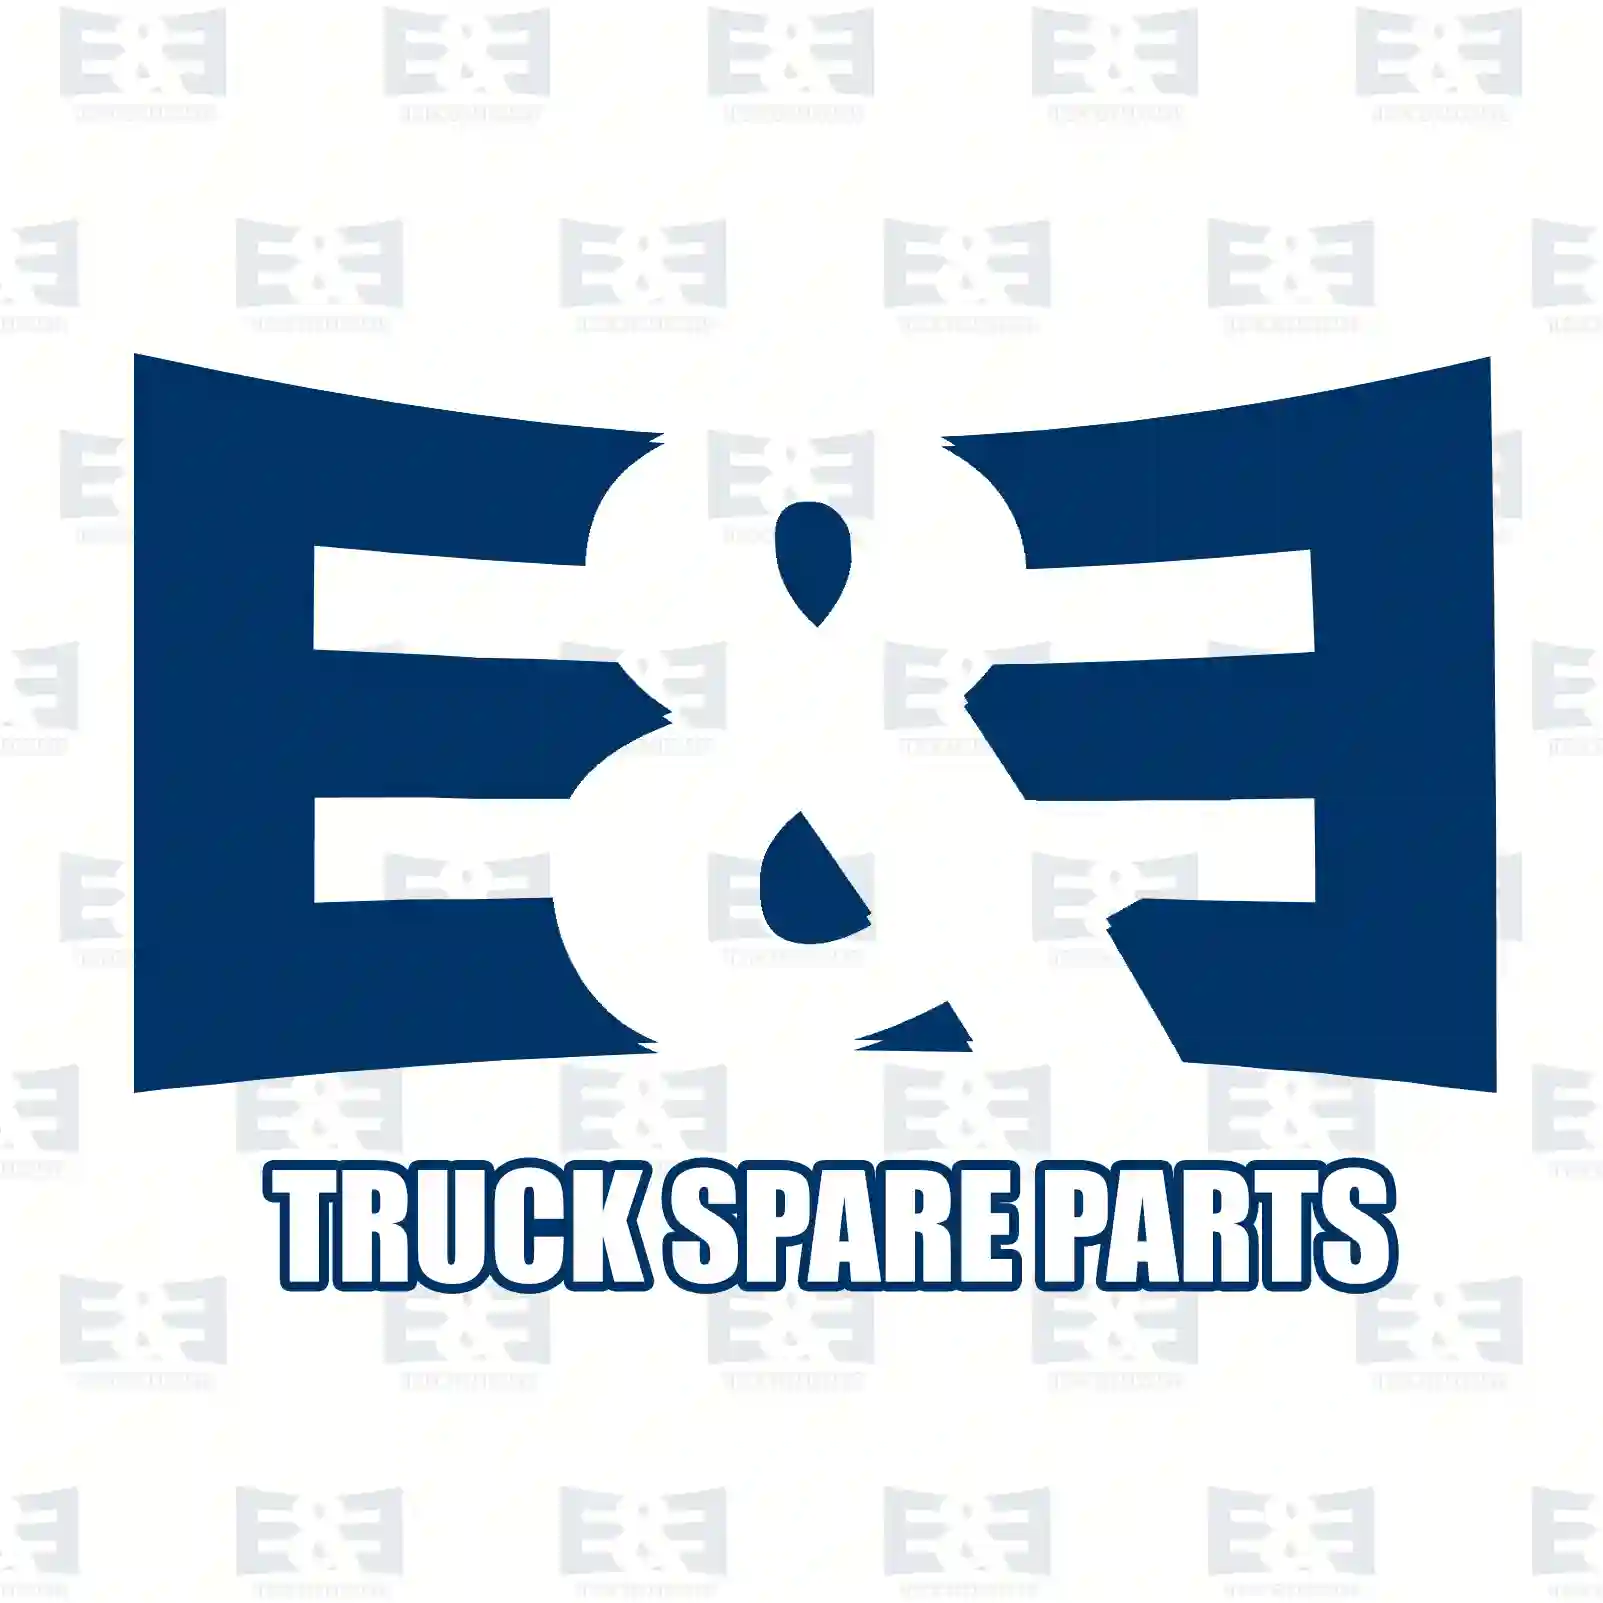 Screw, 2E2270434, 4009900701, 3839900701, ||  2E2270434 E&E Truck Spare Parts | Truck Spare Parts, Auotomotive Spare Parts Screw, 2E2270434, 4009900701, 3839900701, ||  2E2270434 E&E Truck Spare Parts | Truck Spare Parts, Auotomotive Spare Parts